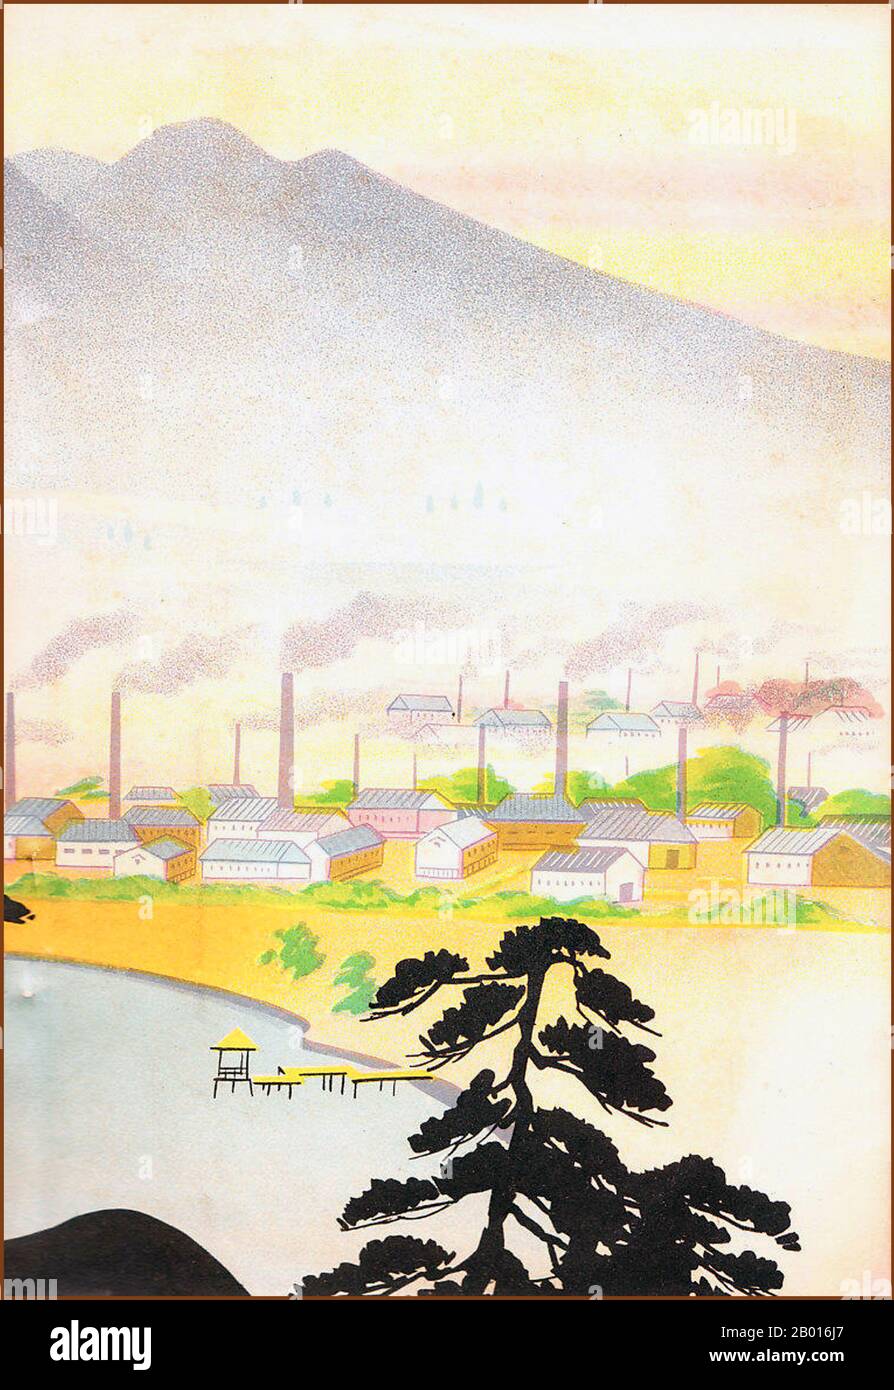 Japan: Rauch steigt aus Seidenfabriken in Suzuka City, Präfektur Mie, 1934. Suzuka ist eine Stadt in der Präfektur Mie. Während der Edo-Zeit war das moderne Gebiet um Suzuka Teil des Tōkaidō und hatte zwei Poststationen: Ishiyakushi-Juku und Shōno-Juku. Stockfoto